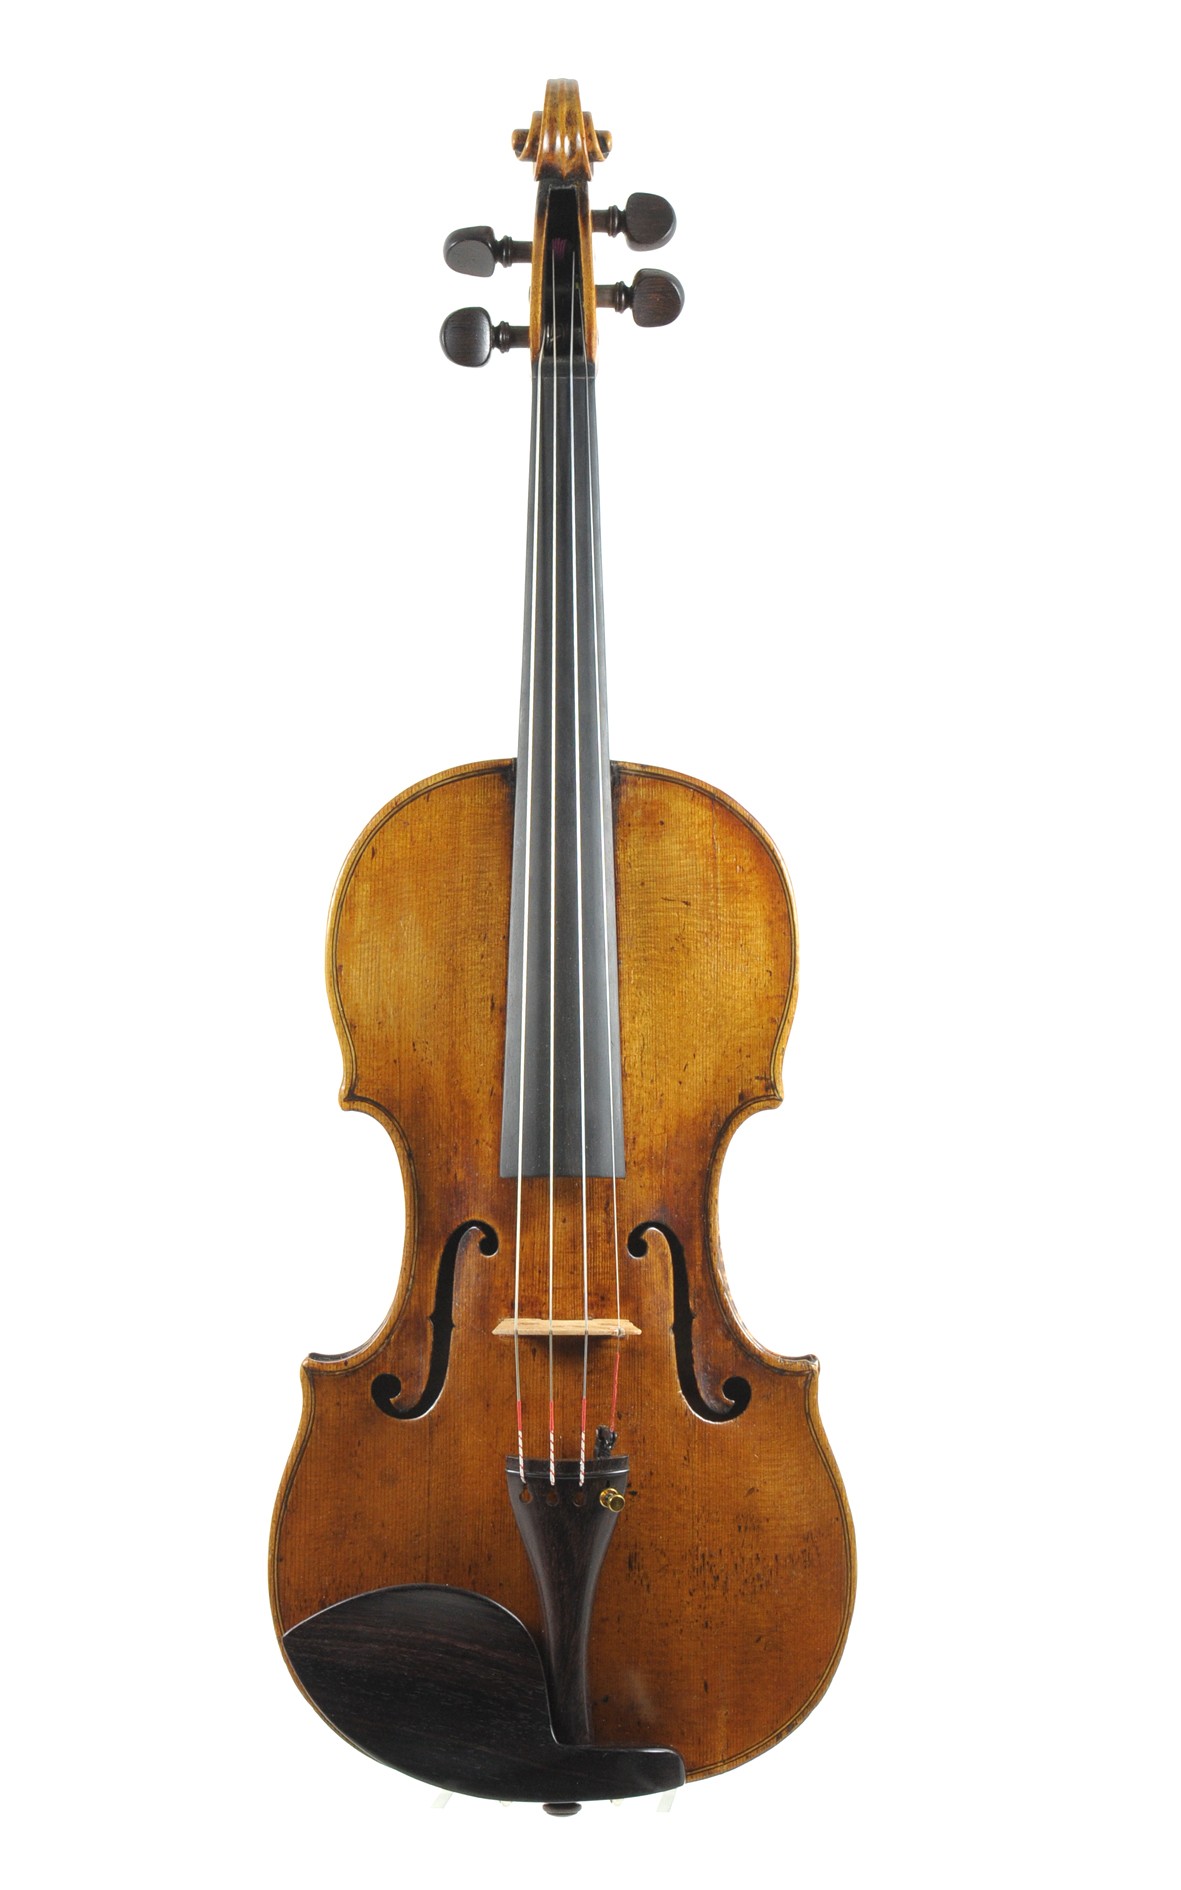 Sebastian Dalinger, Viennese violin made in 1798 - top